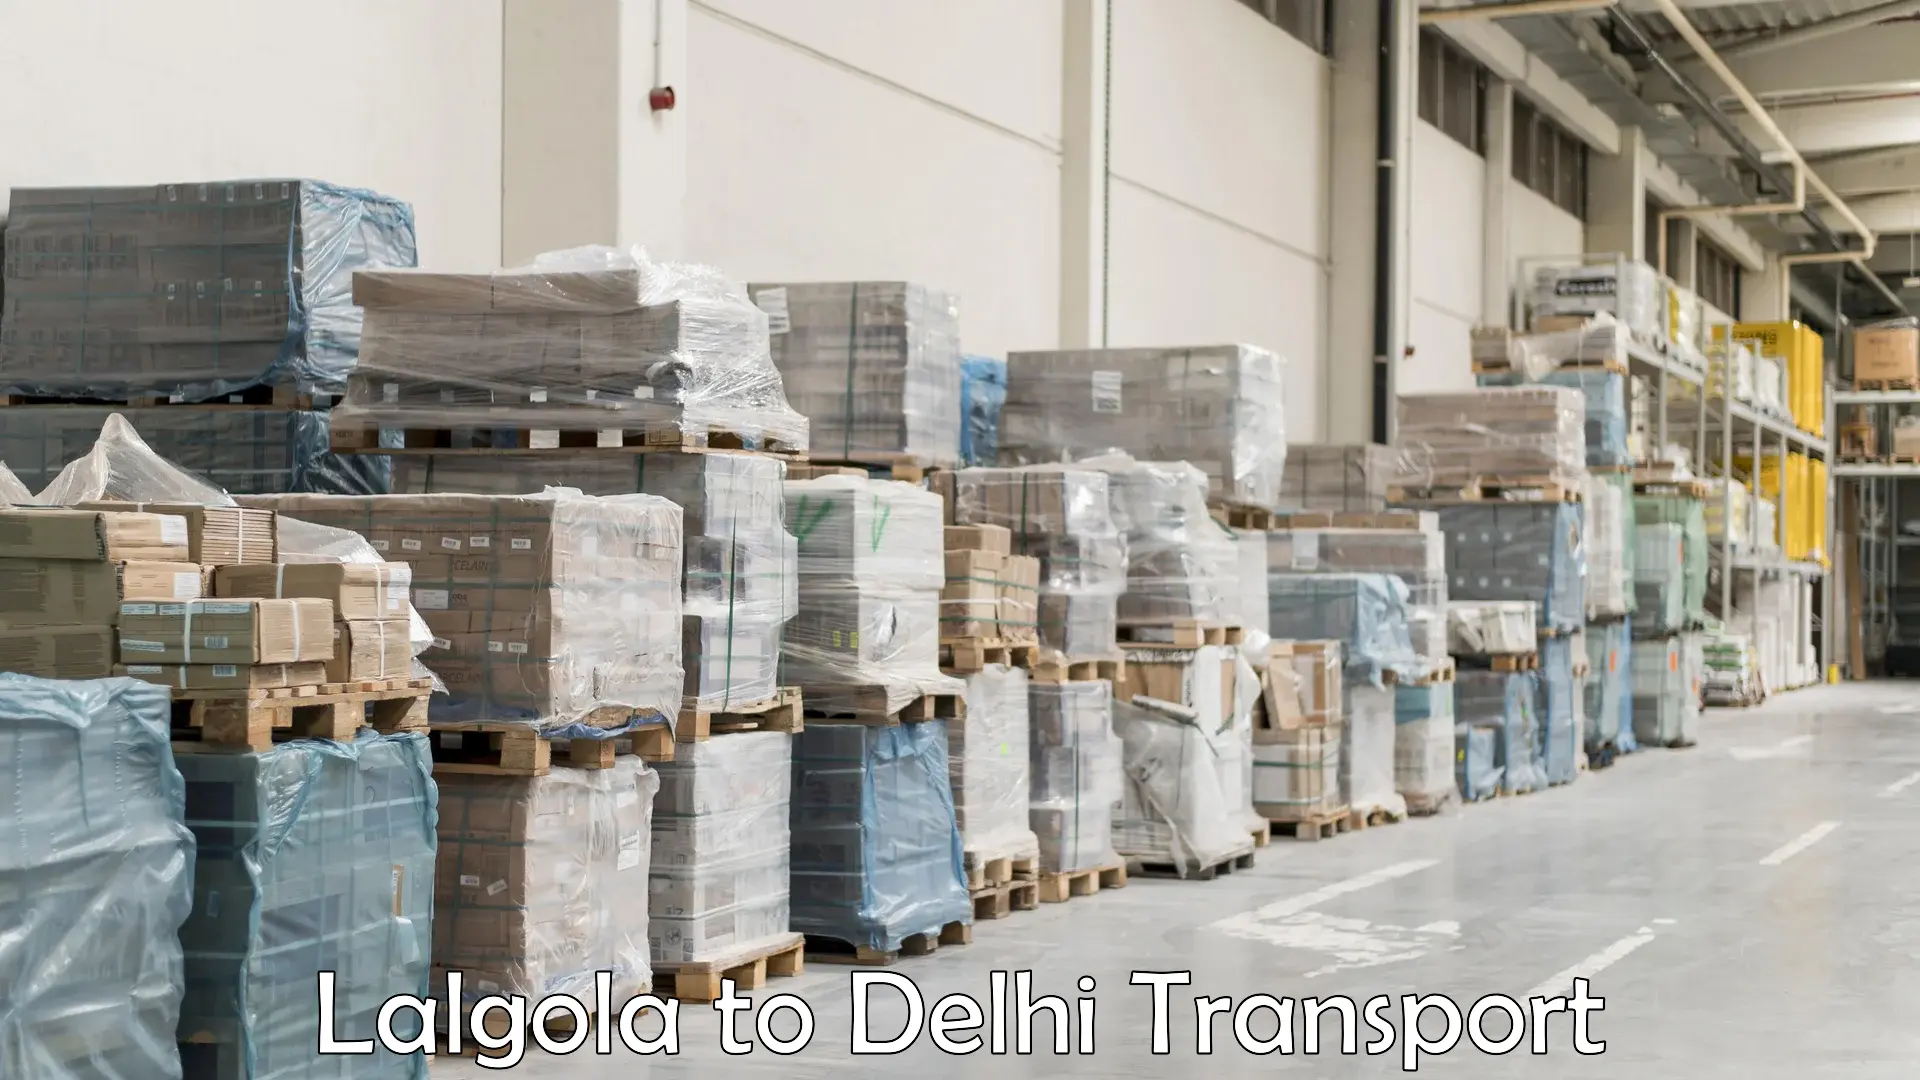 Commercial transport service Lalgola to Delhi